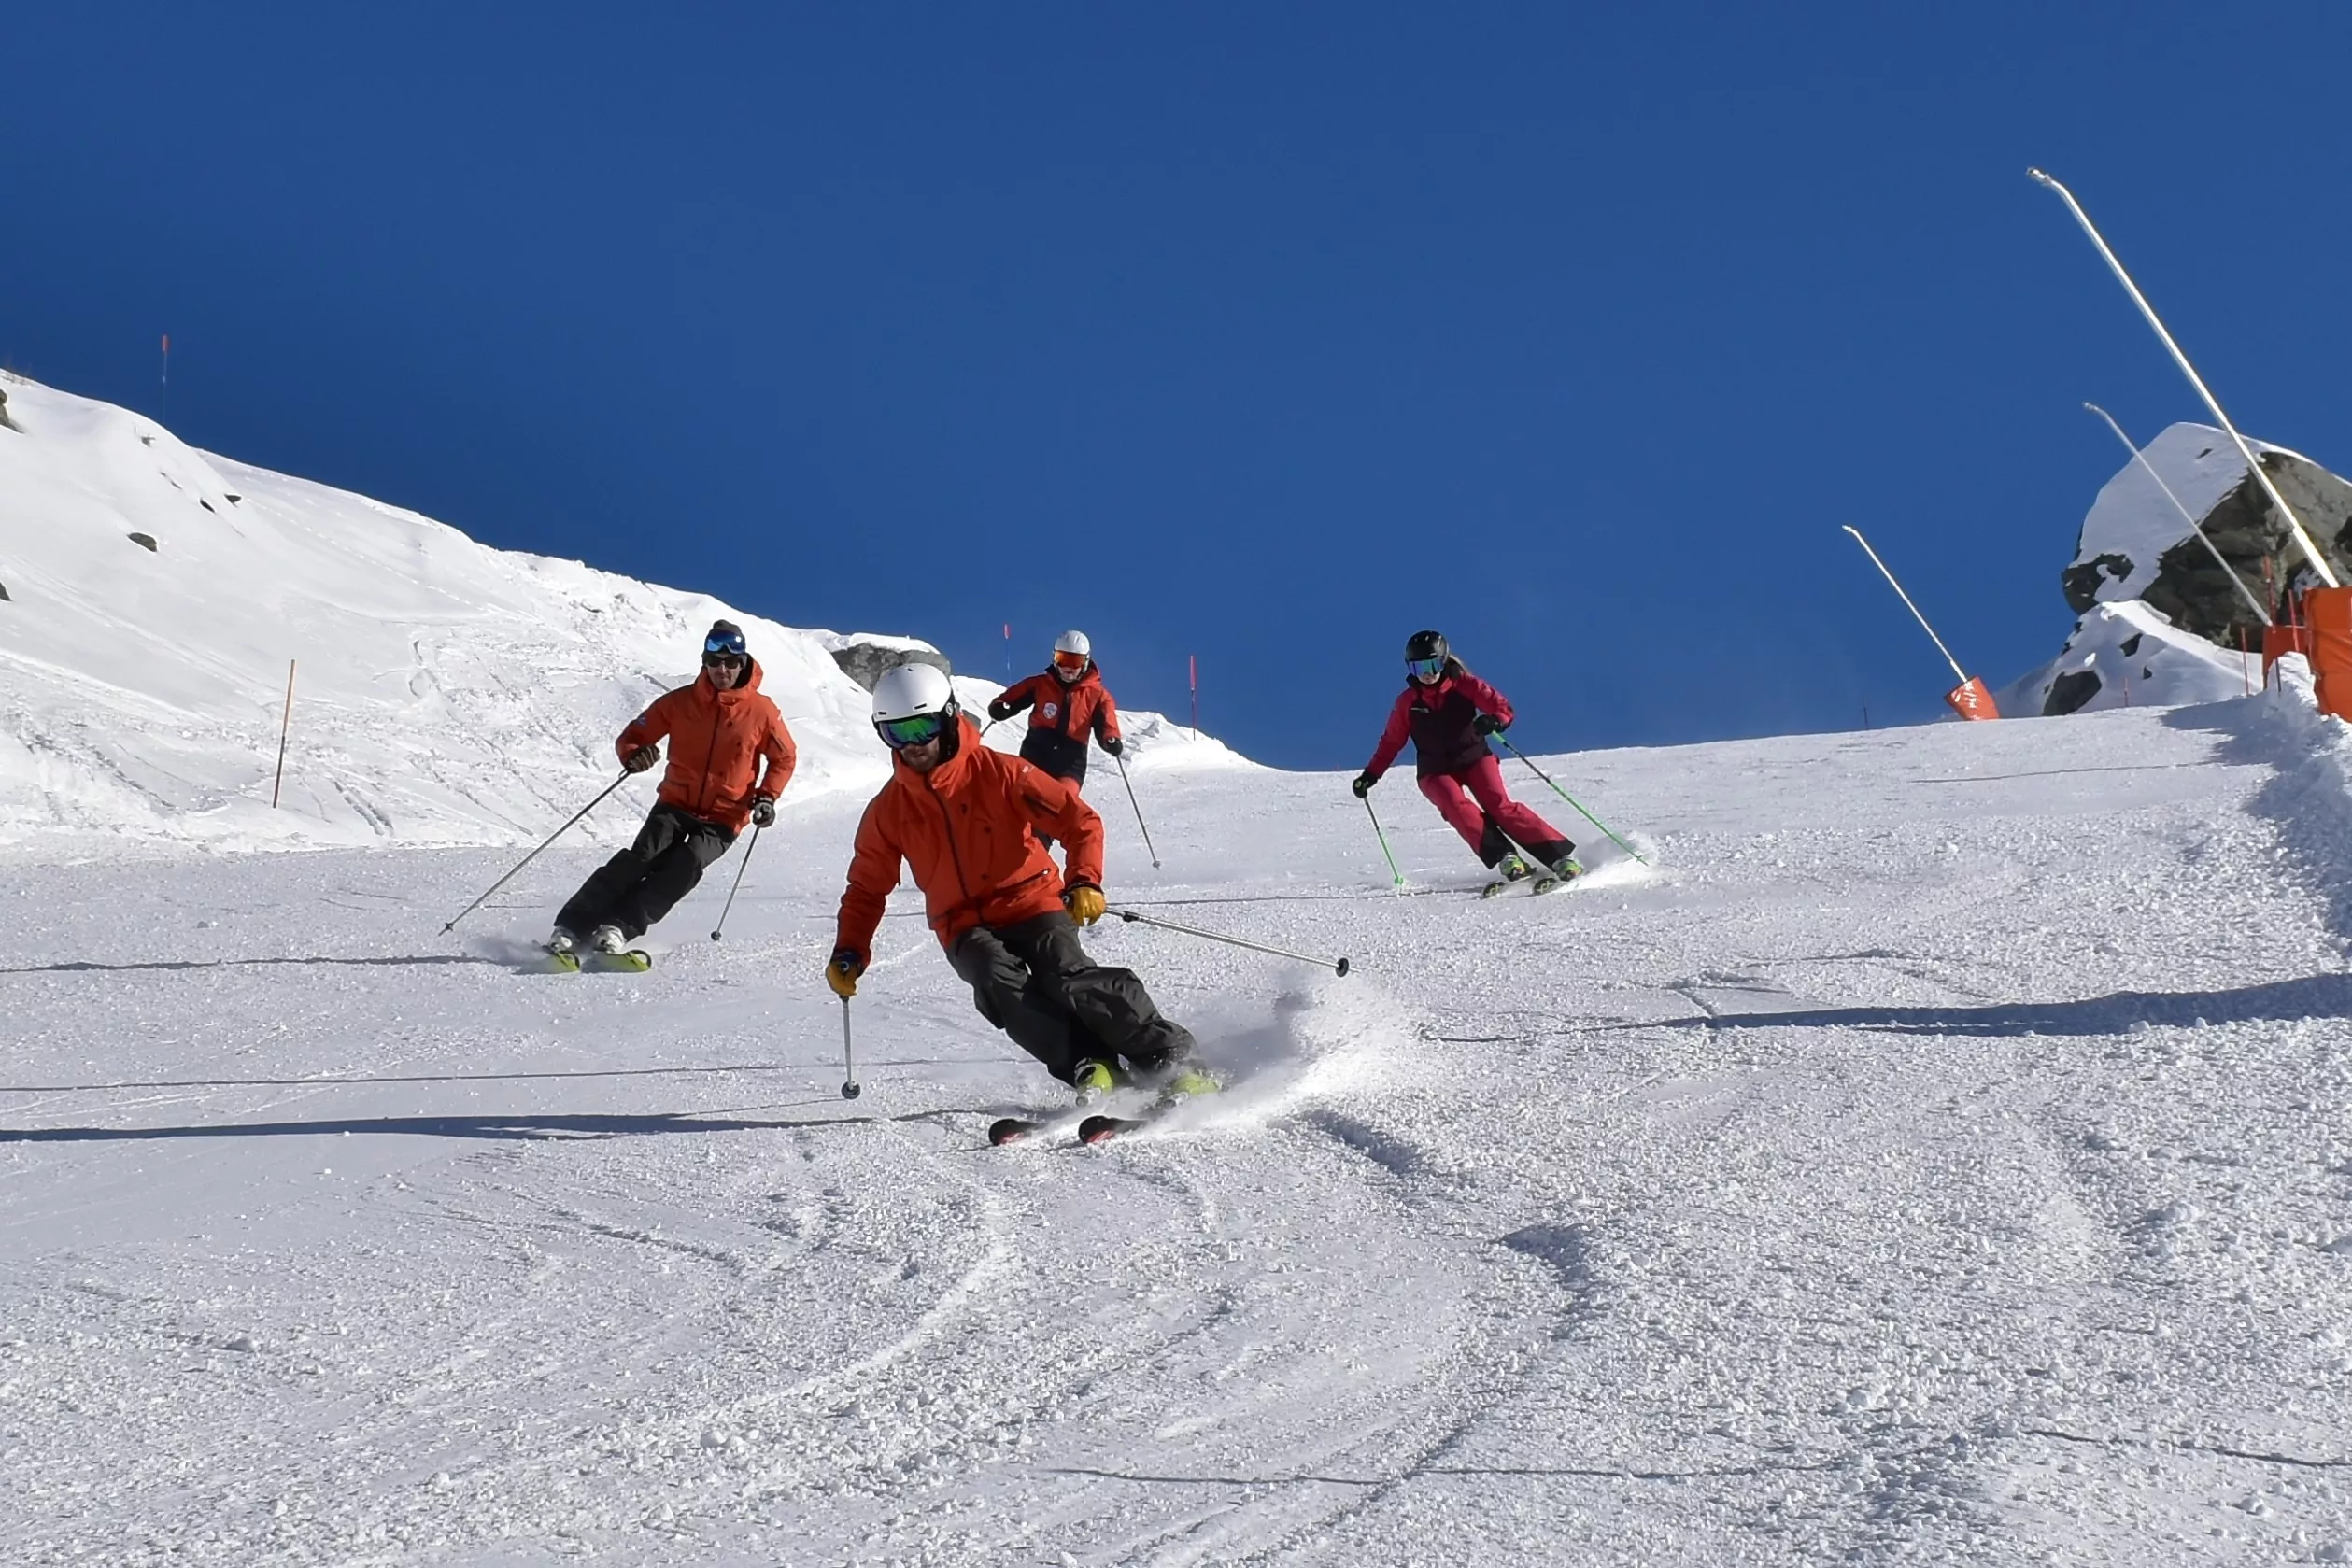 My Ski School Zermatt Switzerland in Switzerland, Europe | Snowboarding,Skiing - Rated 4.1